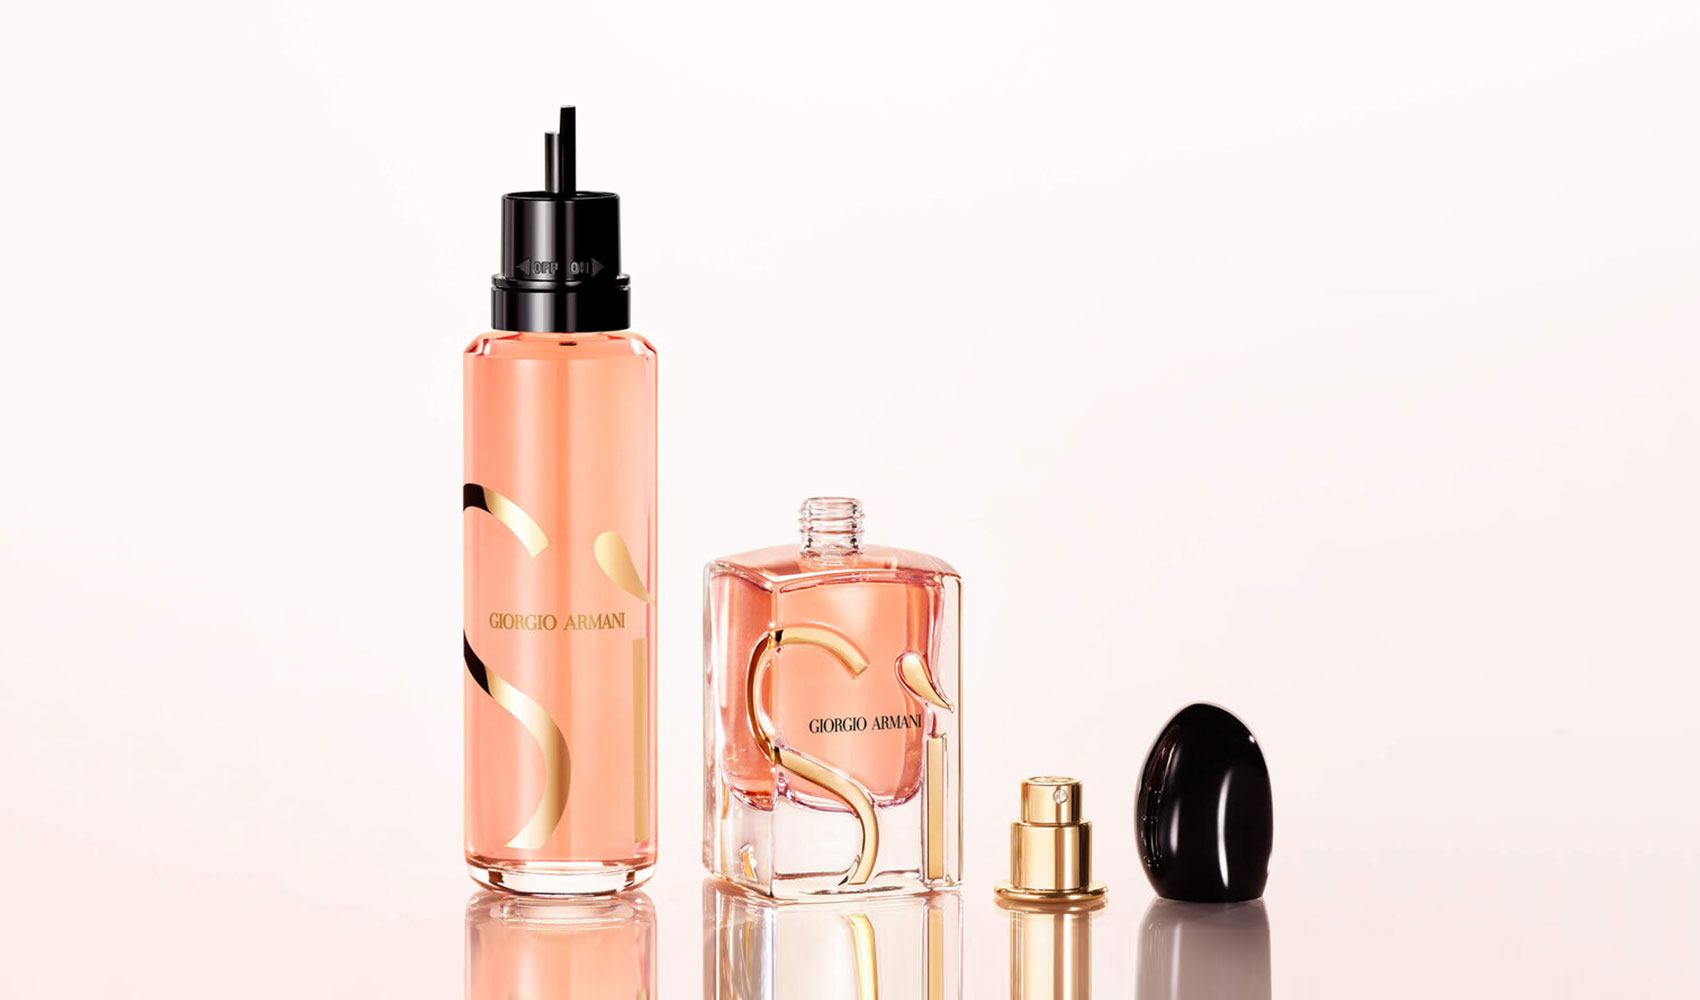 Het nieuwe navulbare Intense SÌ-parfum van het merk Giorgio Armani